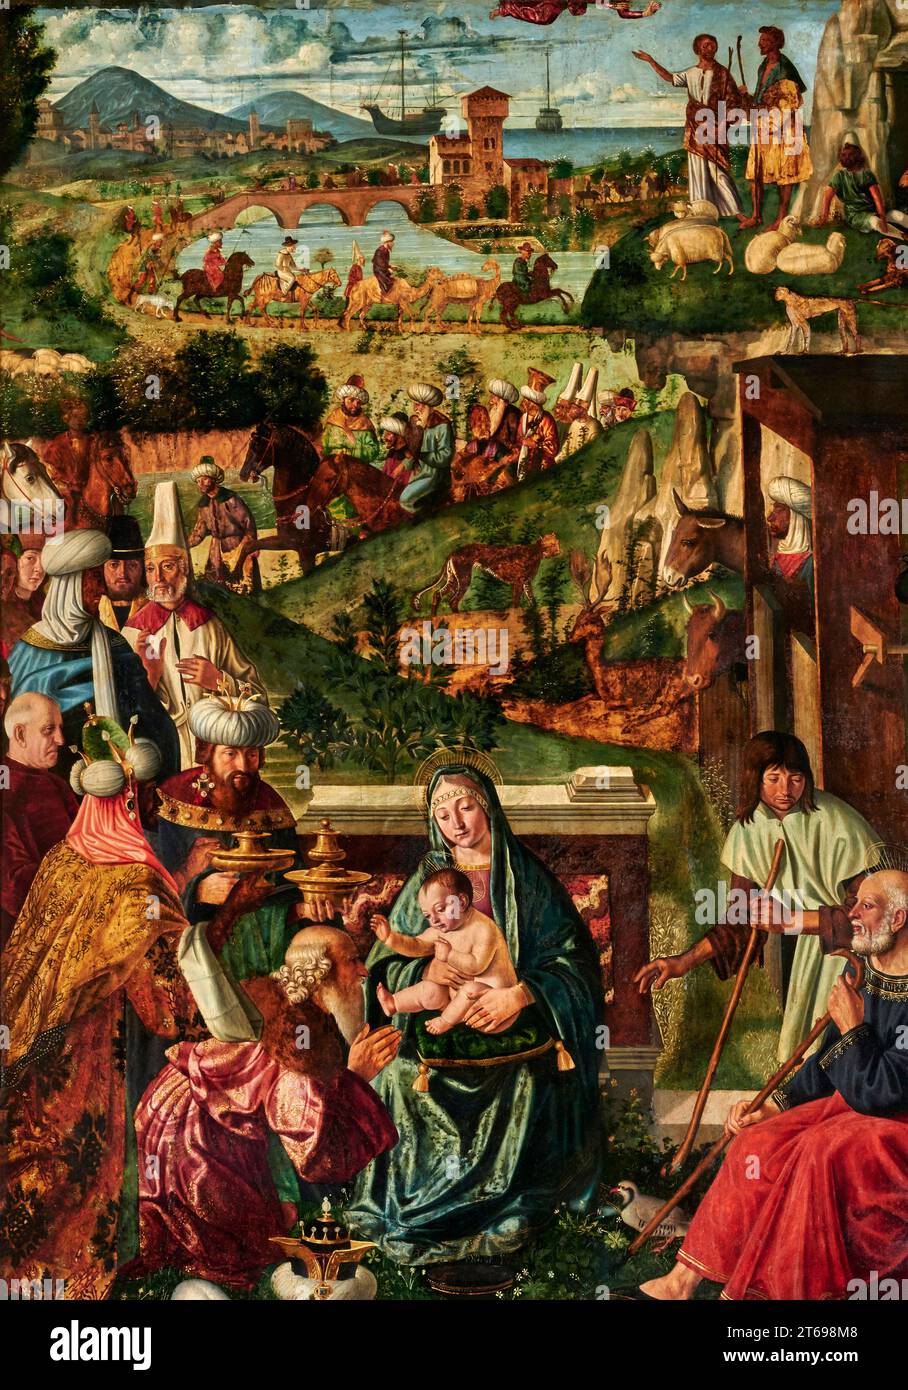 Adorazione dei Magi   - olio su tavola  -  Cristoforo Caselli    - 1499 -  Parma, chiesa di S.Giovanni Evangelista Stock Photo